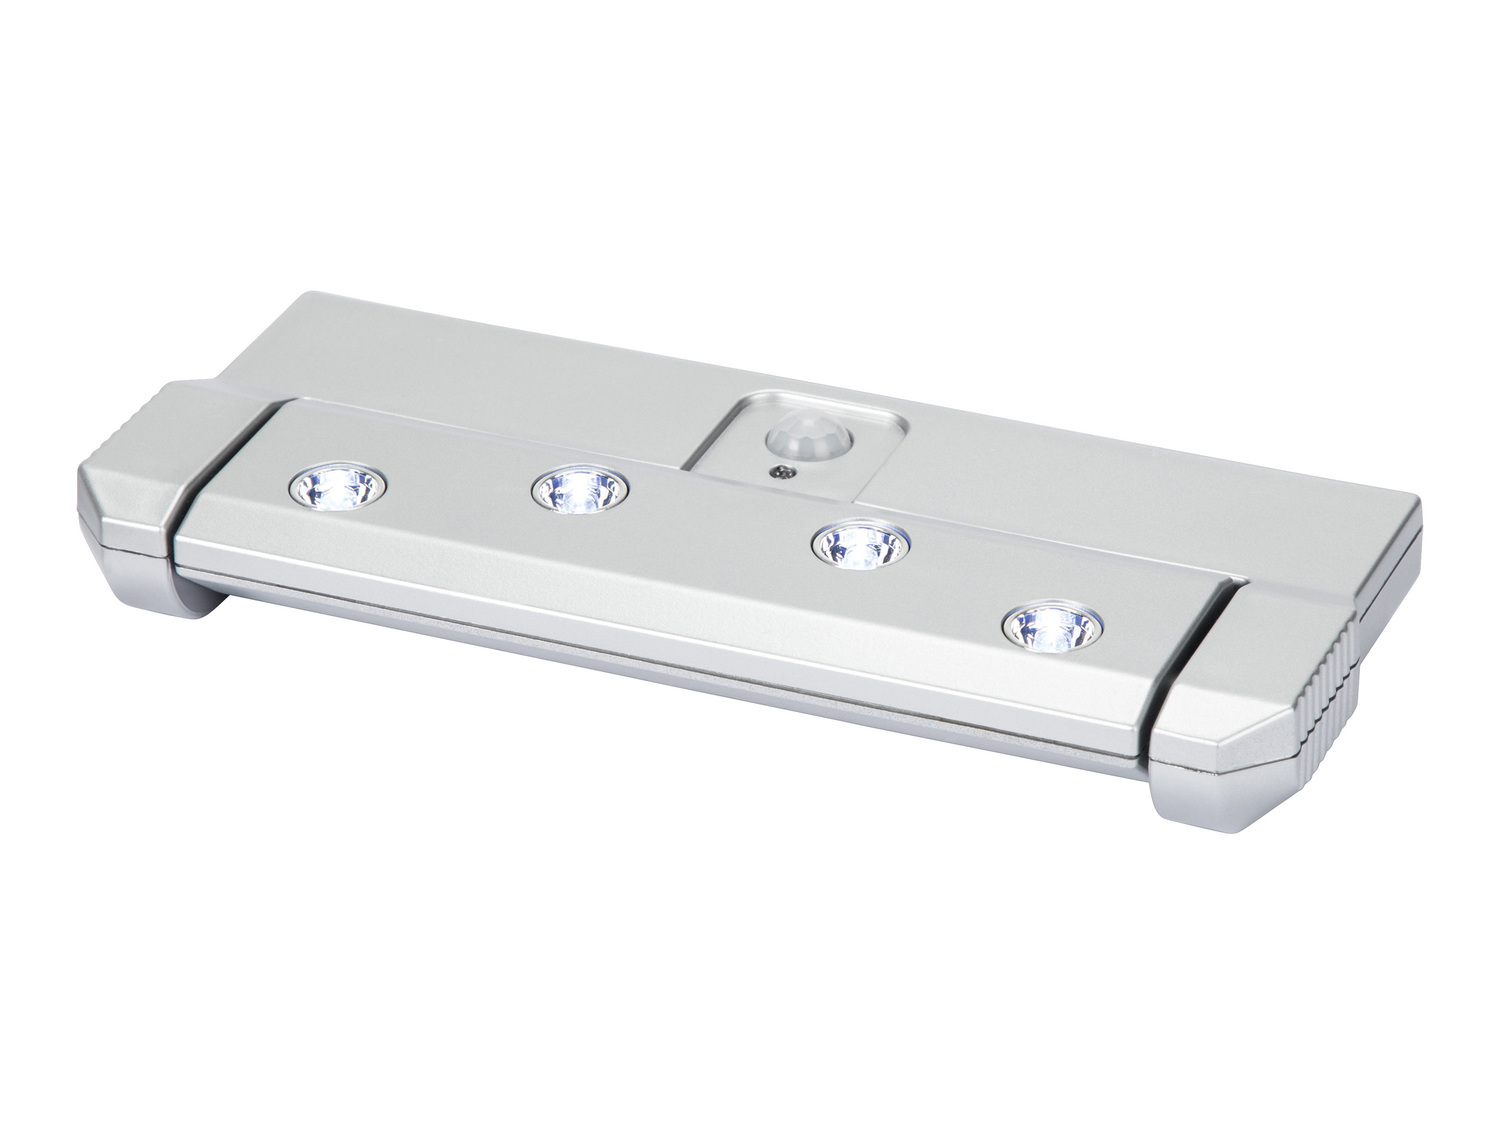 Lampada sottopensile LED con sensore di movimento Livarno Lux, prezzo 6.99 € 
- ...